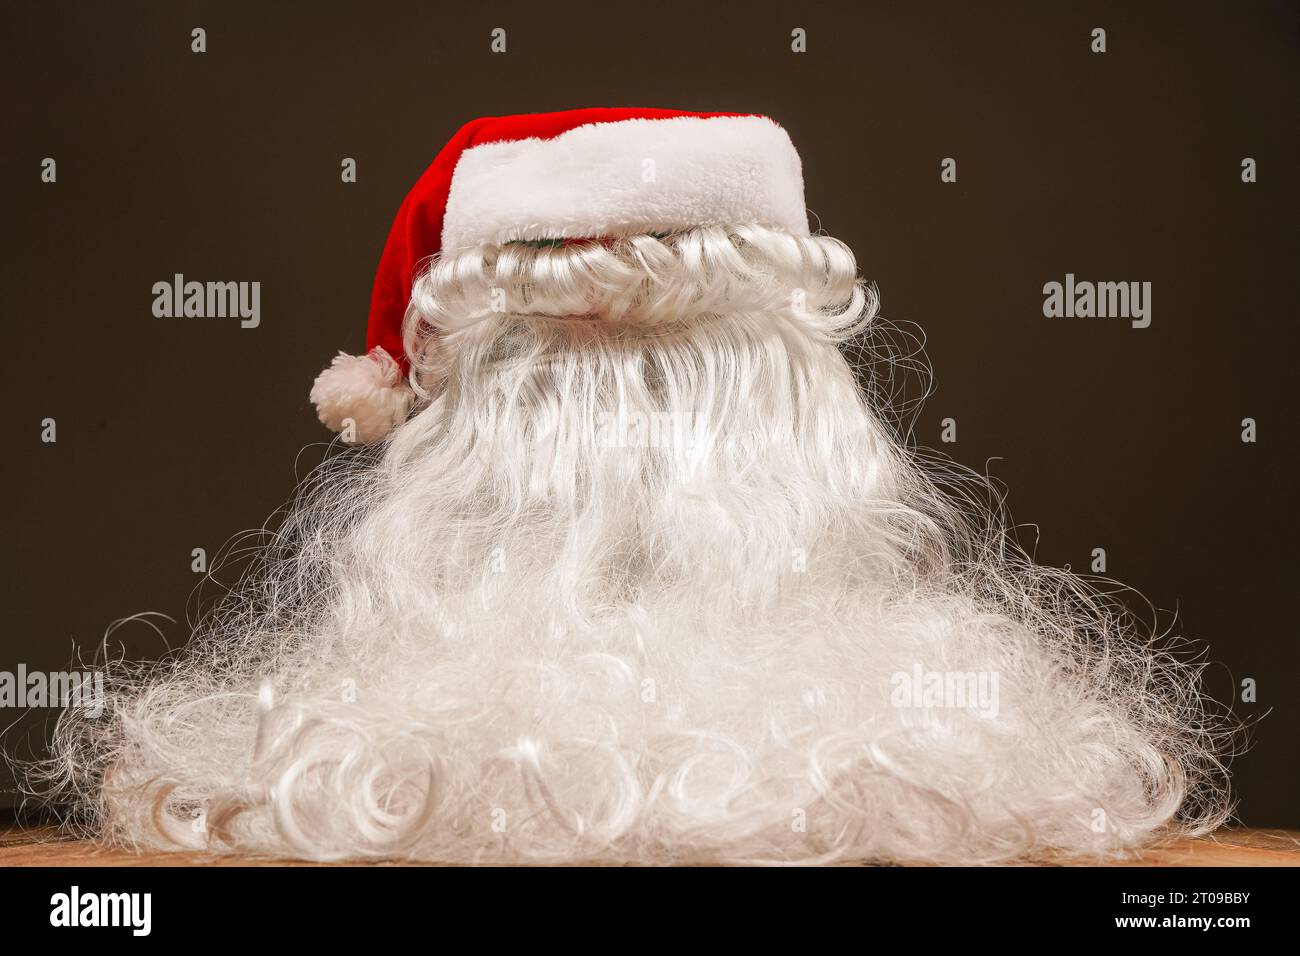 Weihnachtsmann Hut und Bart auf hölzernem Hintergrund. Symbolik der Neujahrsfeiertage. Weihnachts- und Neujahrskonzept. Wechsel der Kleidung, Veränderung des Bildes Stockfoto